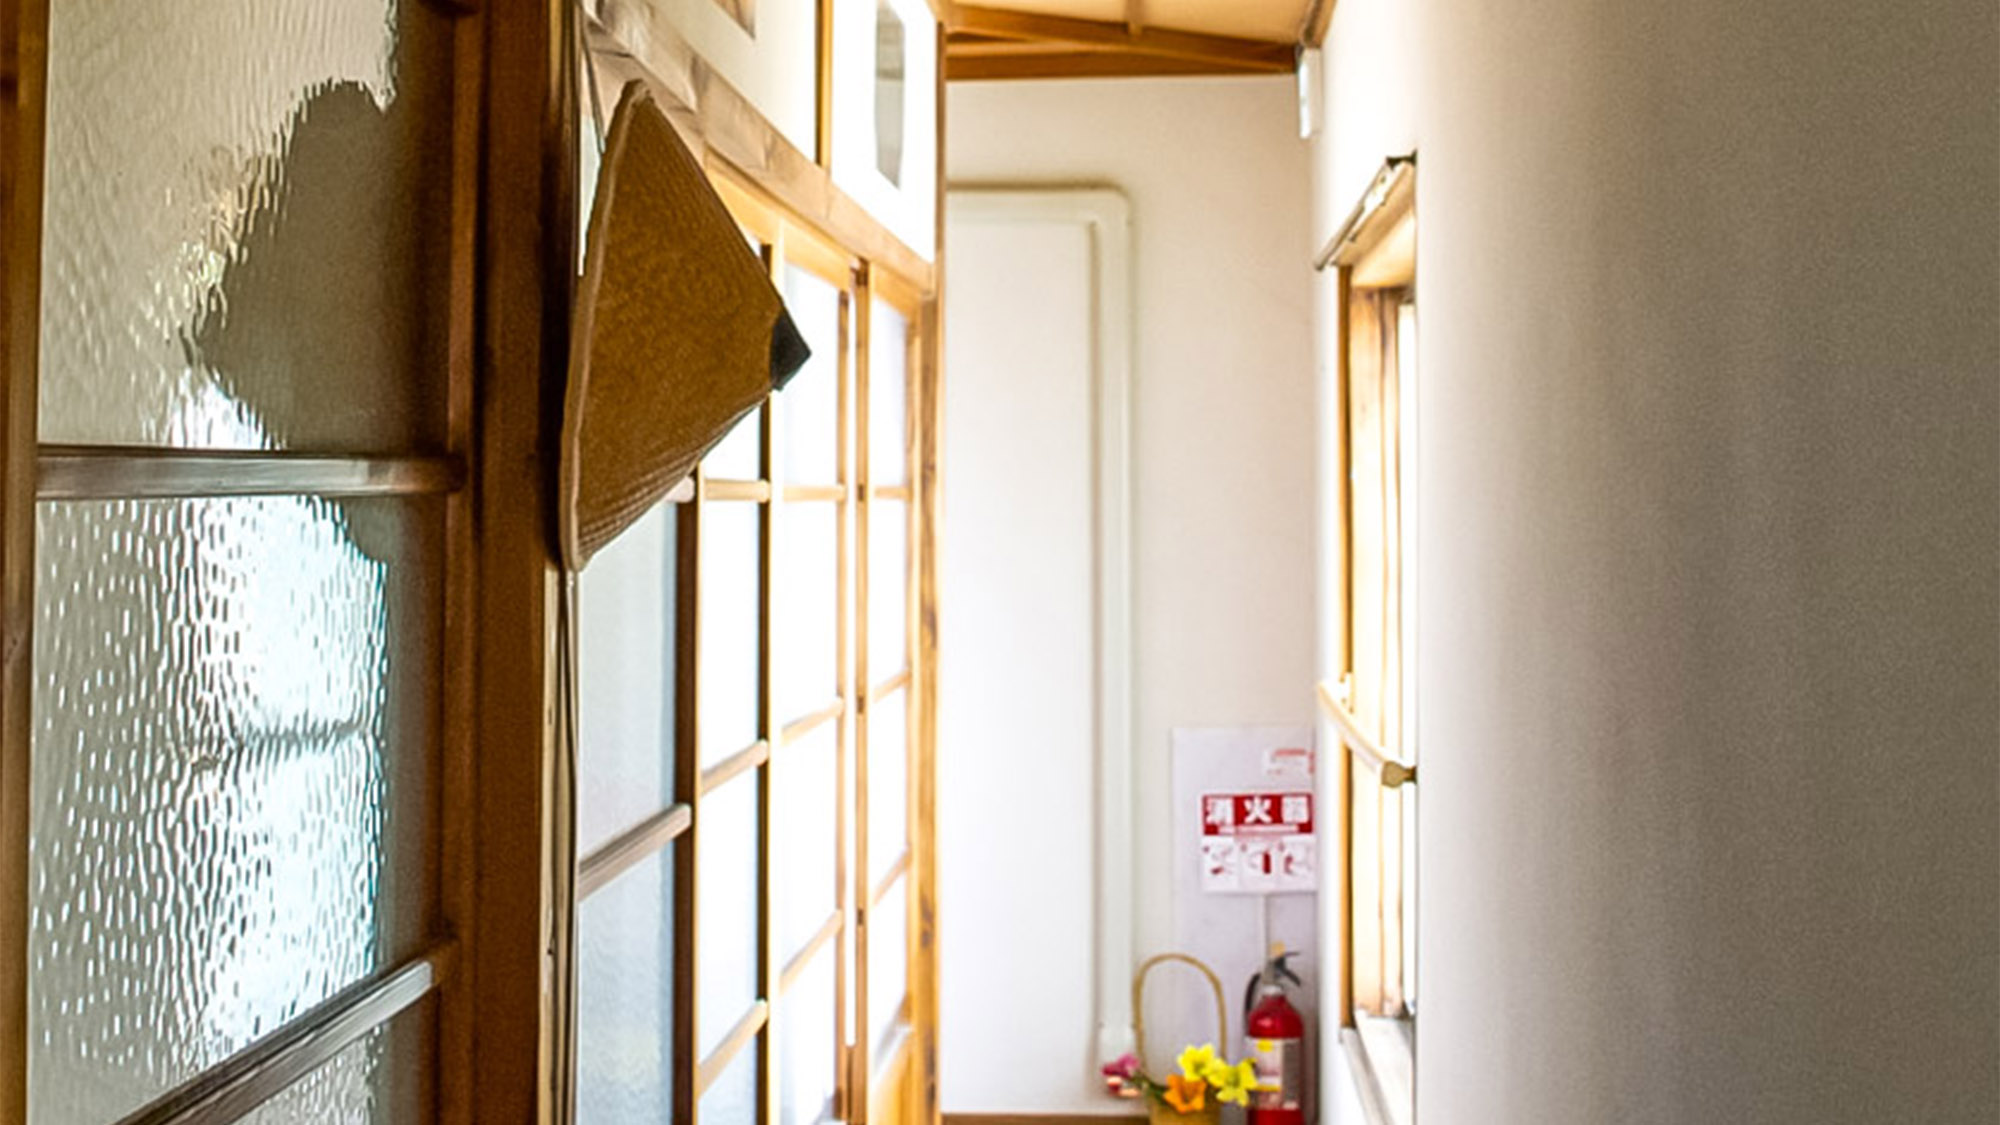 ・＜客室一例＞すりガラスの引き戸に風情を感じる、客室を繋ぐ廊下